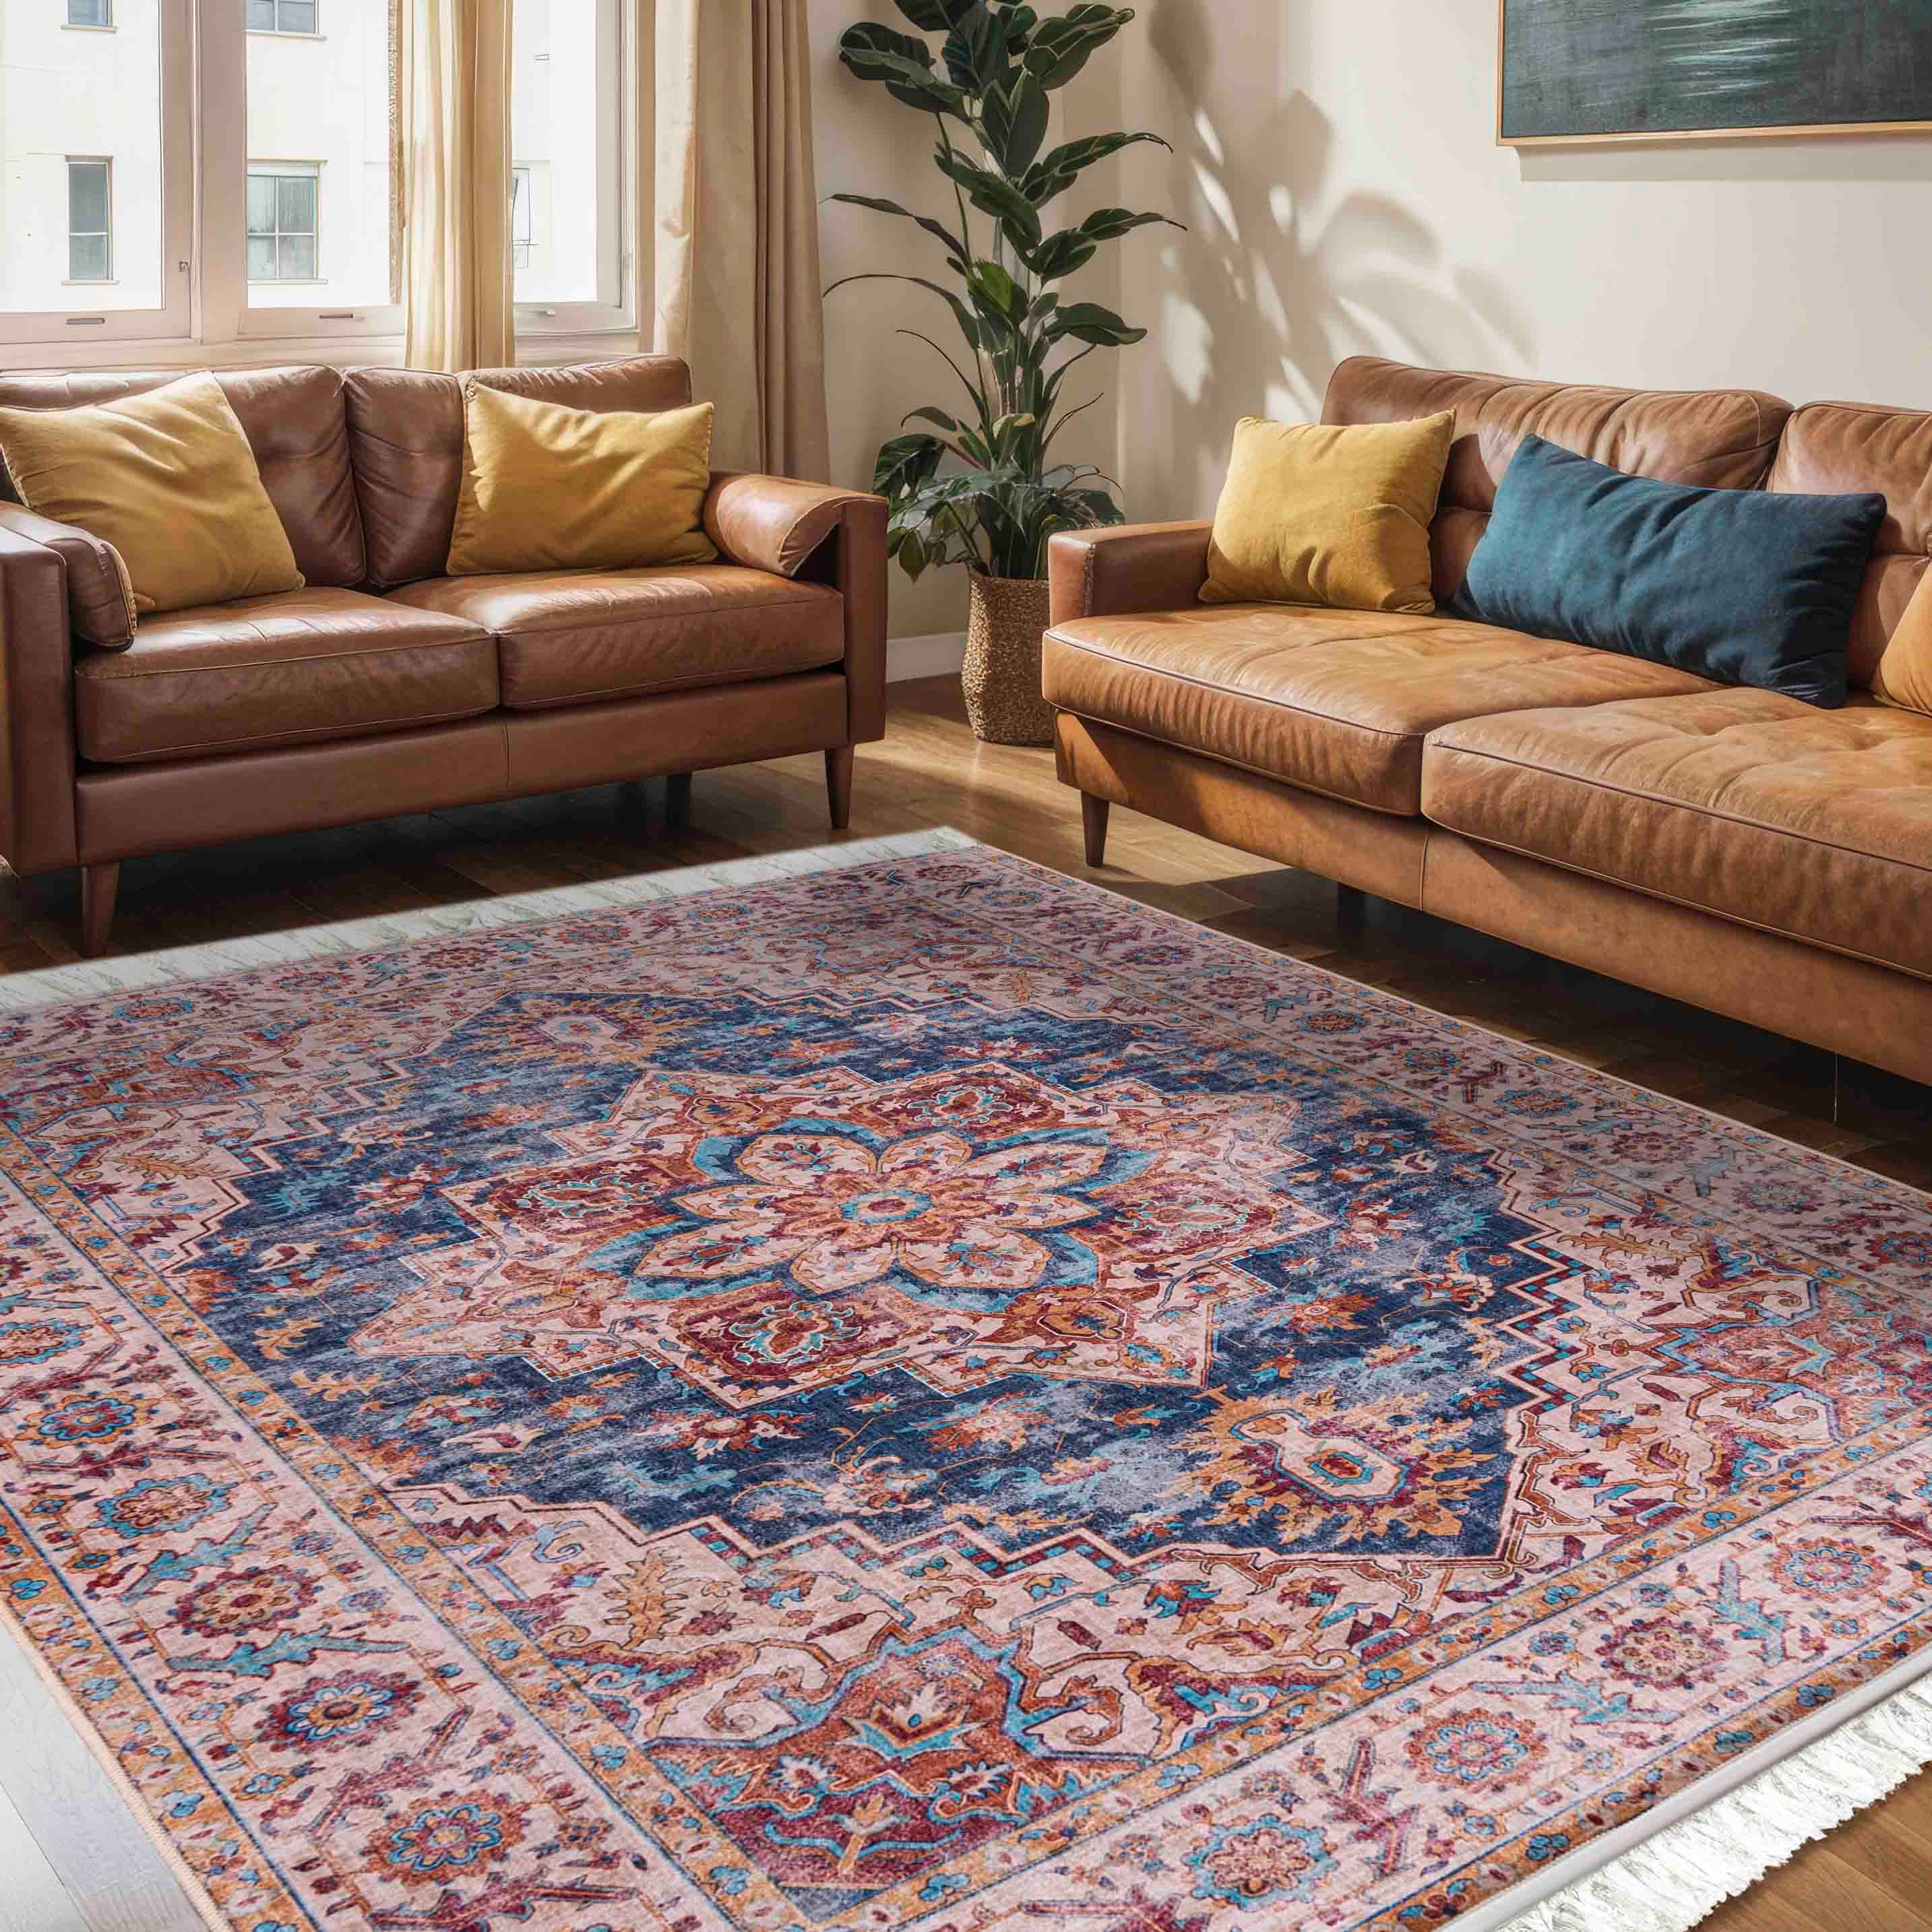 Orientteppich Teppich Oriental Orientteppich Wohnzimmer Orient Muster Beige Braun, Mazovia, 120 x 170 cm, Fußbodenheizung, Allergiker geeignet, Rutschfest